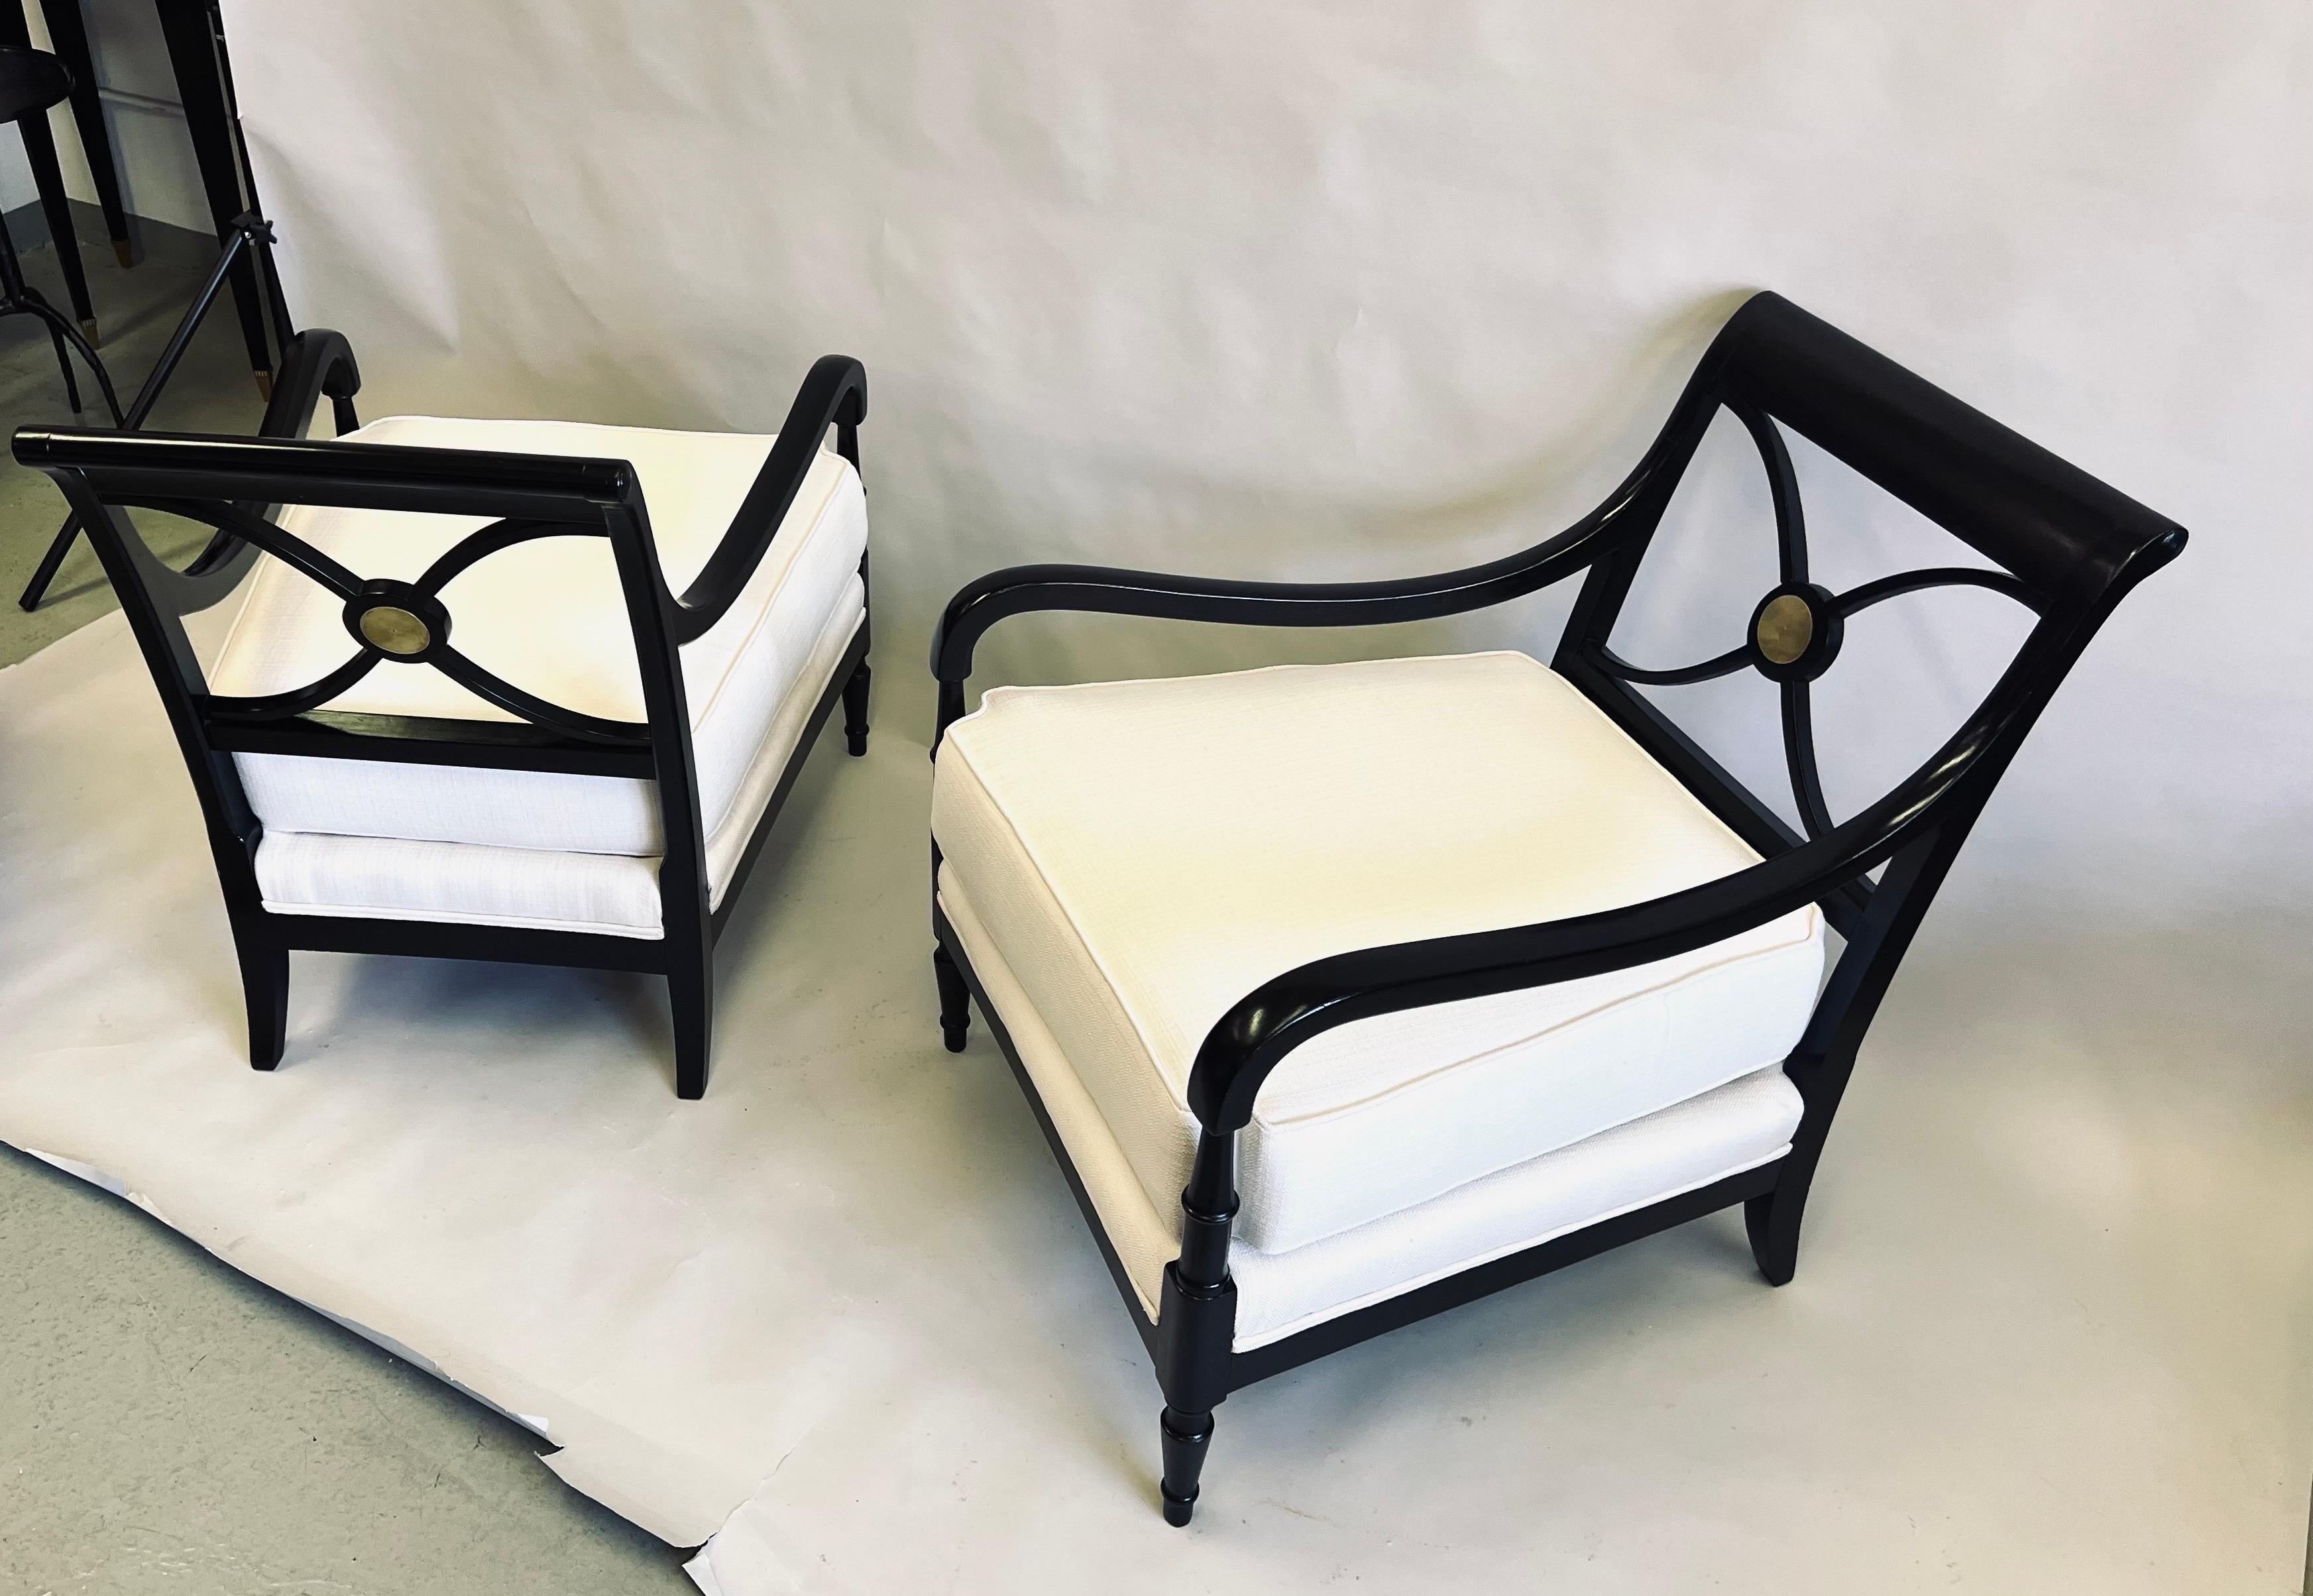 Rare et importante paire de fauteuils / chaises longues néoclassiques modernes du CIRCA de la Maison Jansen, Paris, vers 1940. Ces chaises élégantes expriment le cœur de  Les meubles de la Maison Jansen sont fabriqués à la main avec les matériaux